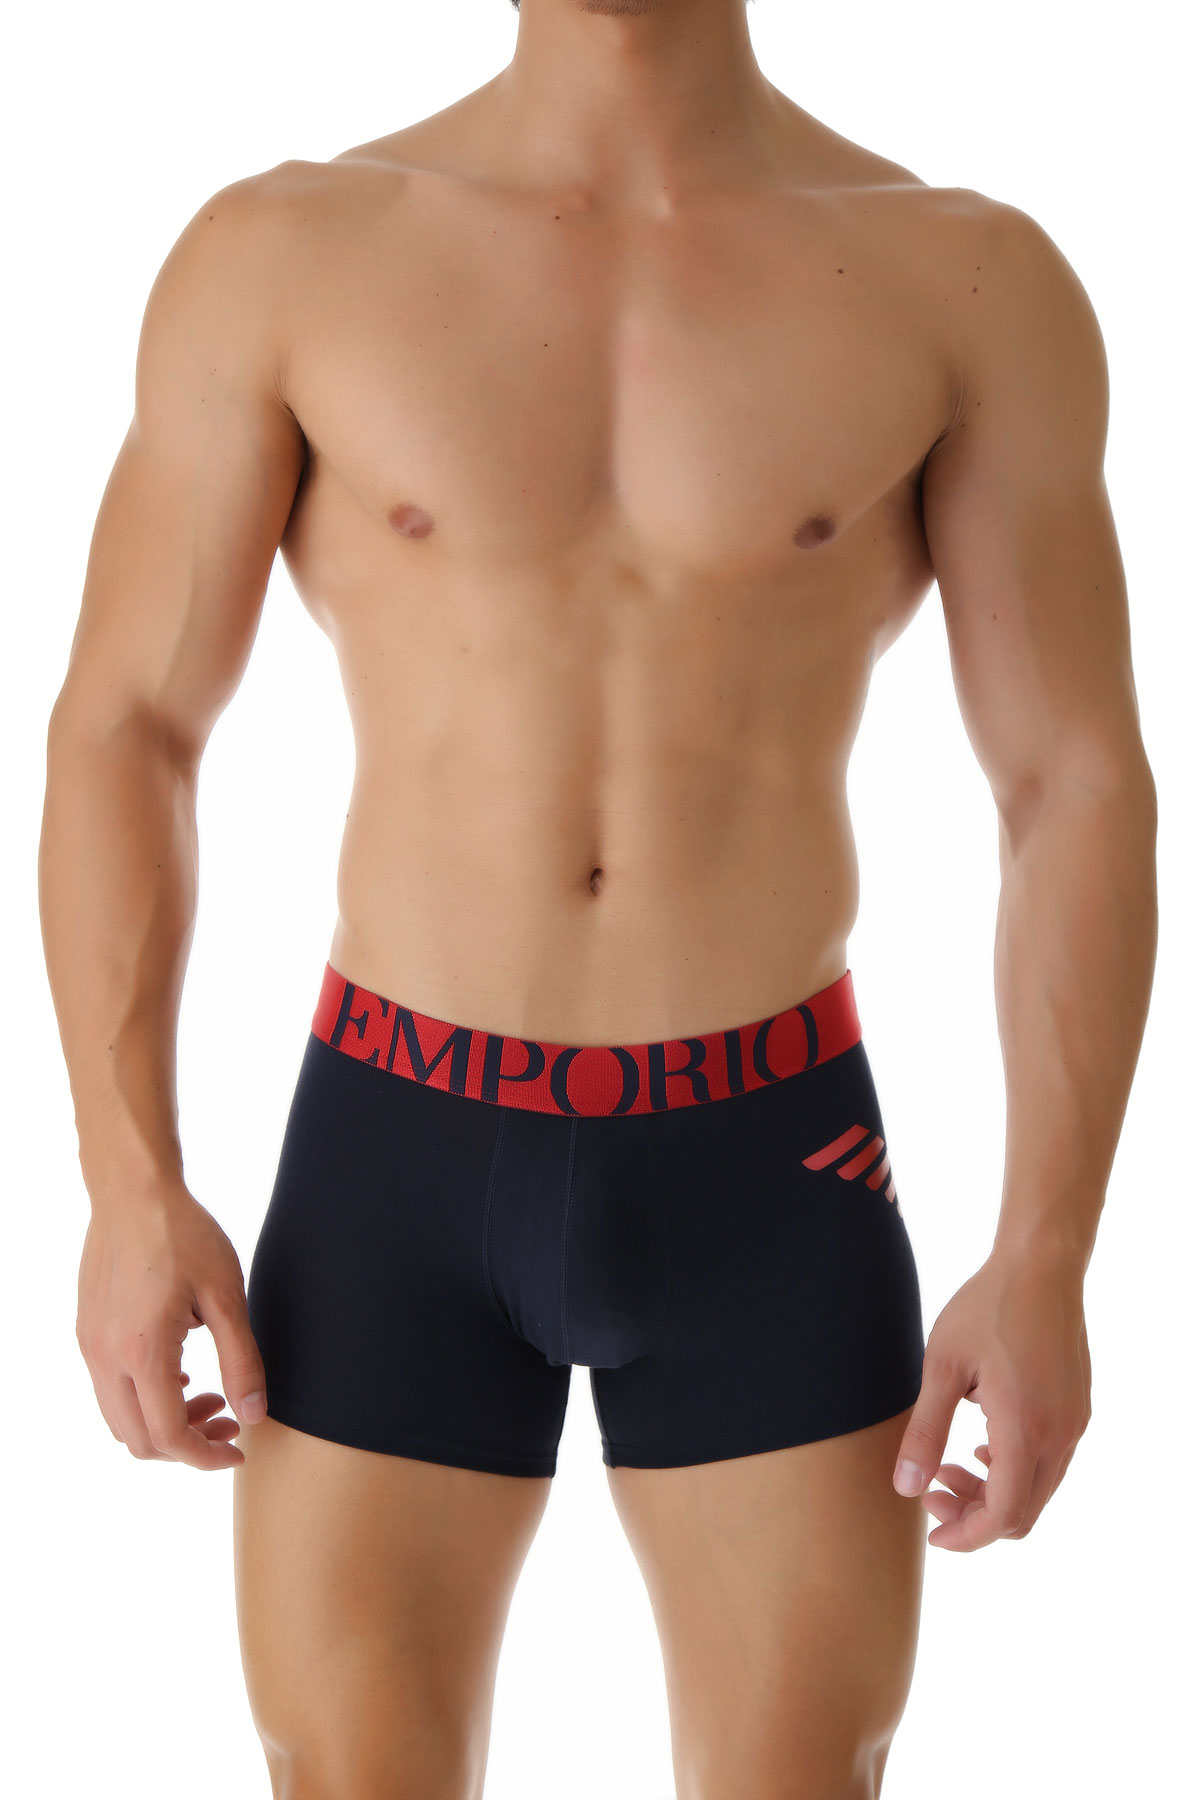 Emporio Armani Boxer Shorts für Herren, Unterhose, Short, Boxer Günstig im Sale, Marineblau, Baumwolle, 2017, L L M S